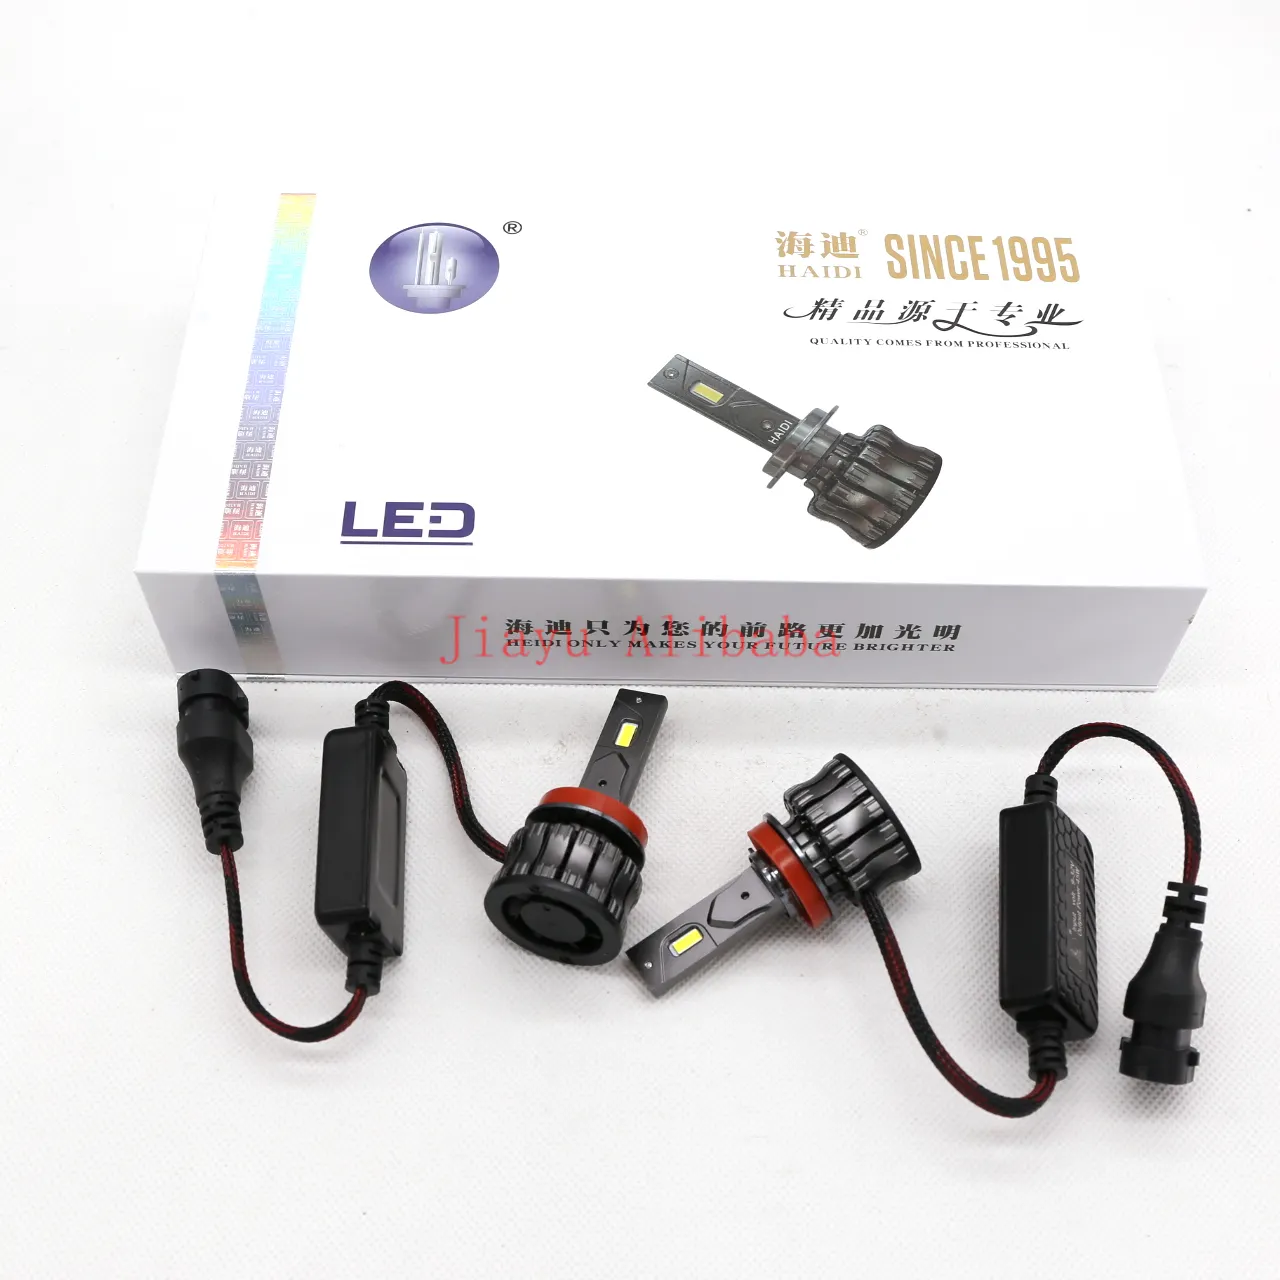 HAIDI H11 bola lampu LED H11, 45W 9-32V 6000K dengan kipas untuk Volkswagen Audi Mercedes BMW Toyota Nissan Honda Mazda